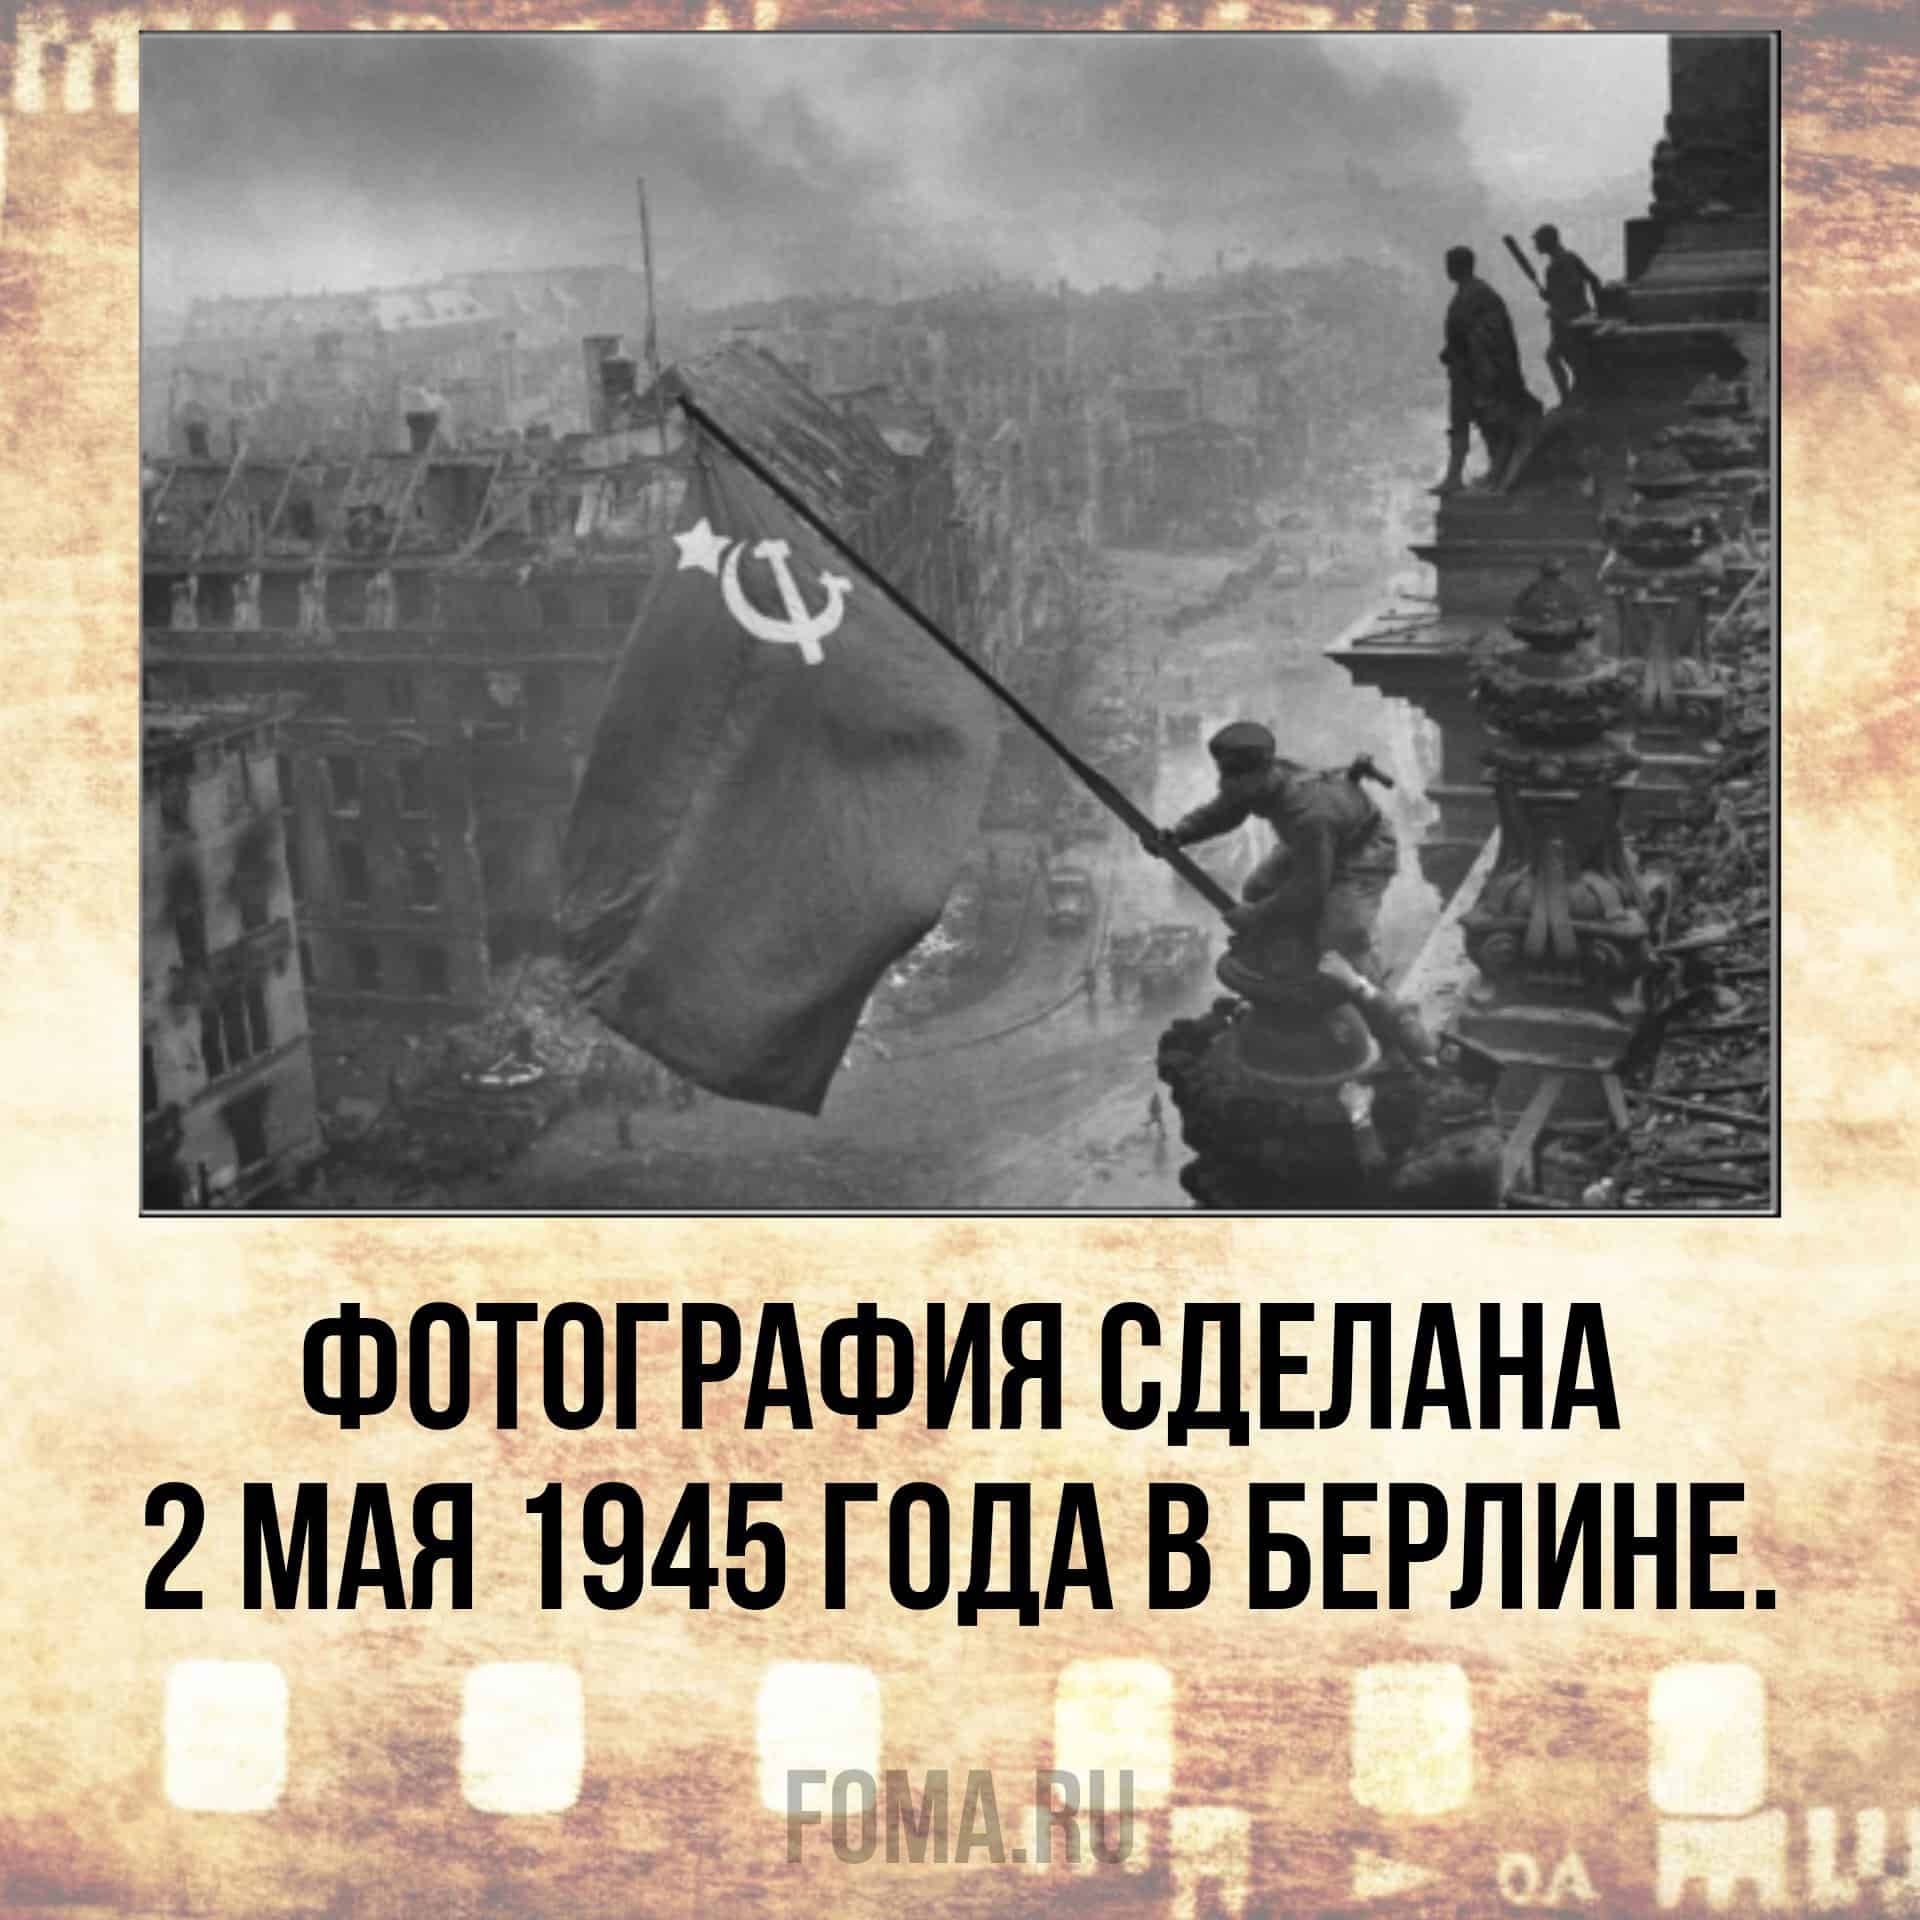 Снимок Евгения Халдея Знамя Победы над Рейхстагом